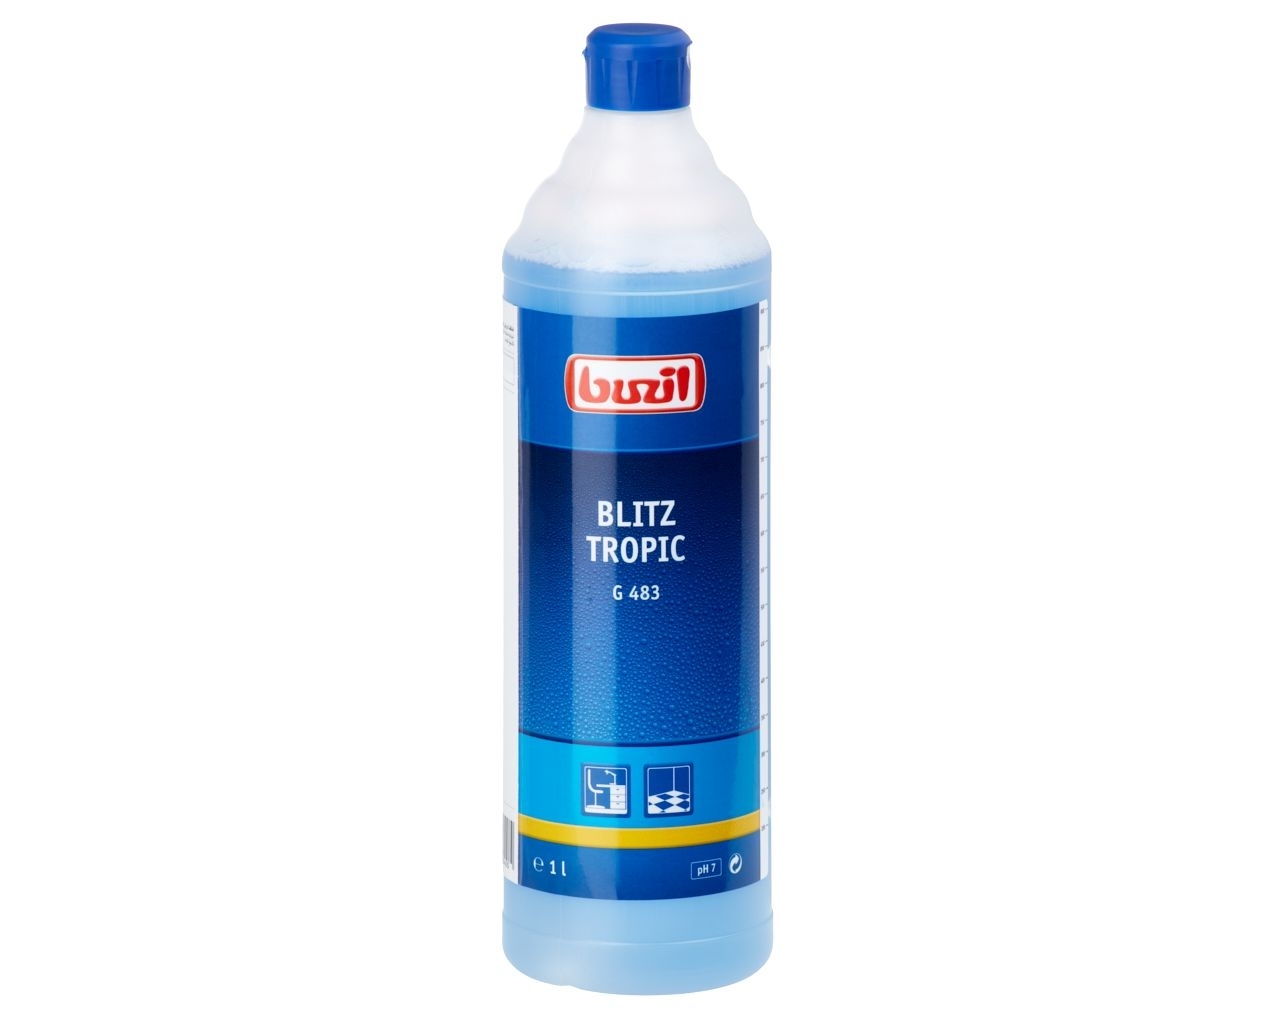 G481 Blitz Tropic - Środek do codziennego mycia podłóg, butelka 1 l